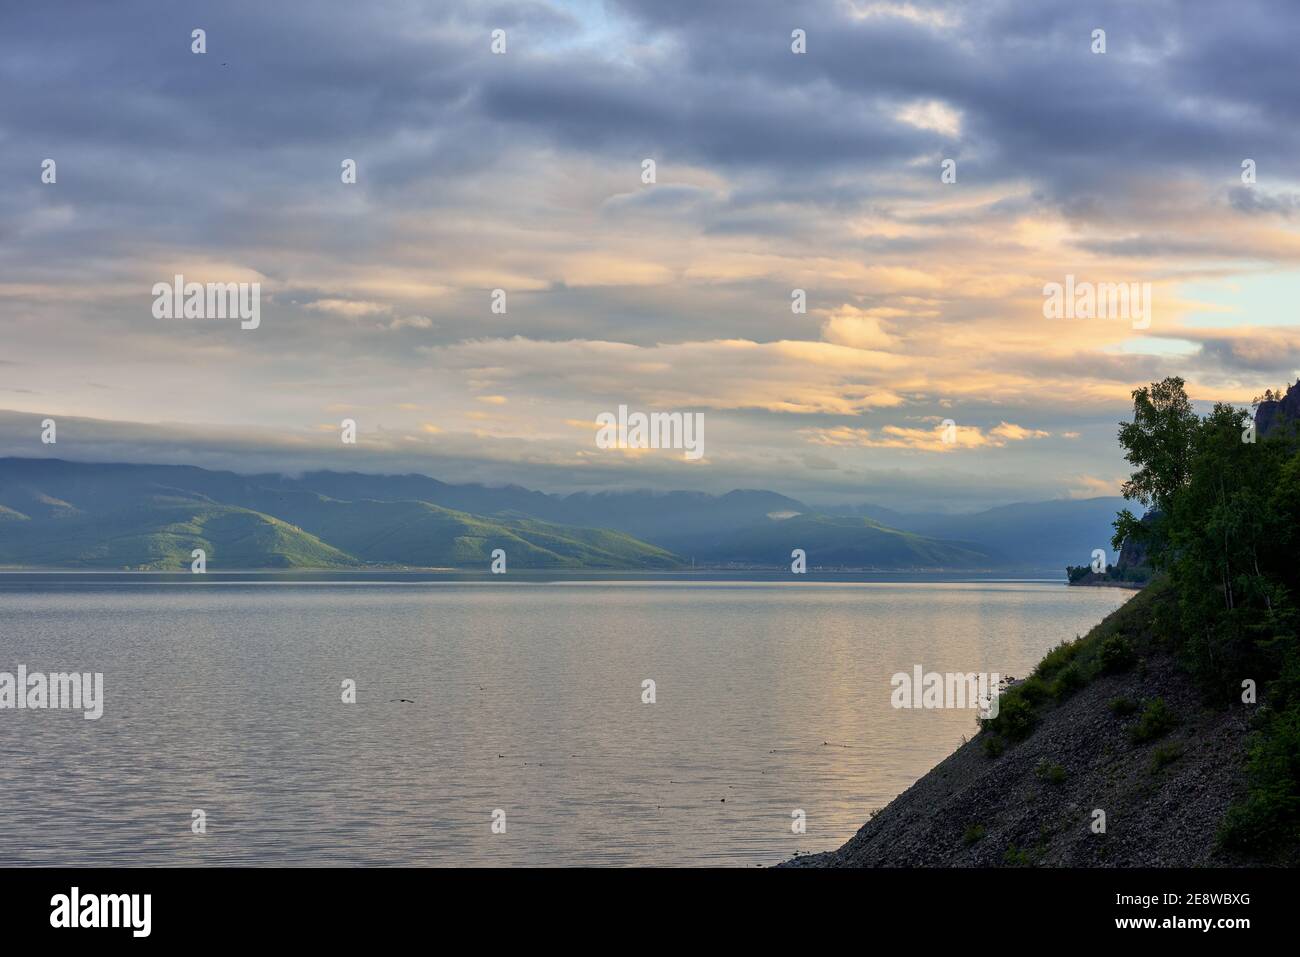 Noche Baikal. La luz del sol rompiendo a través de las nubes ilumina las colinas boscosas en Hamar-Daban. Junio. Región de Irkutsk Foto de stock